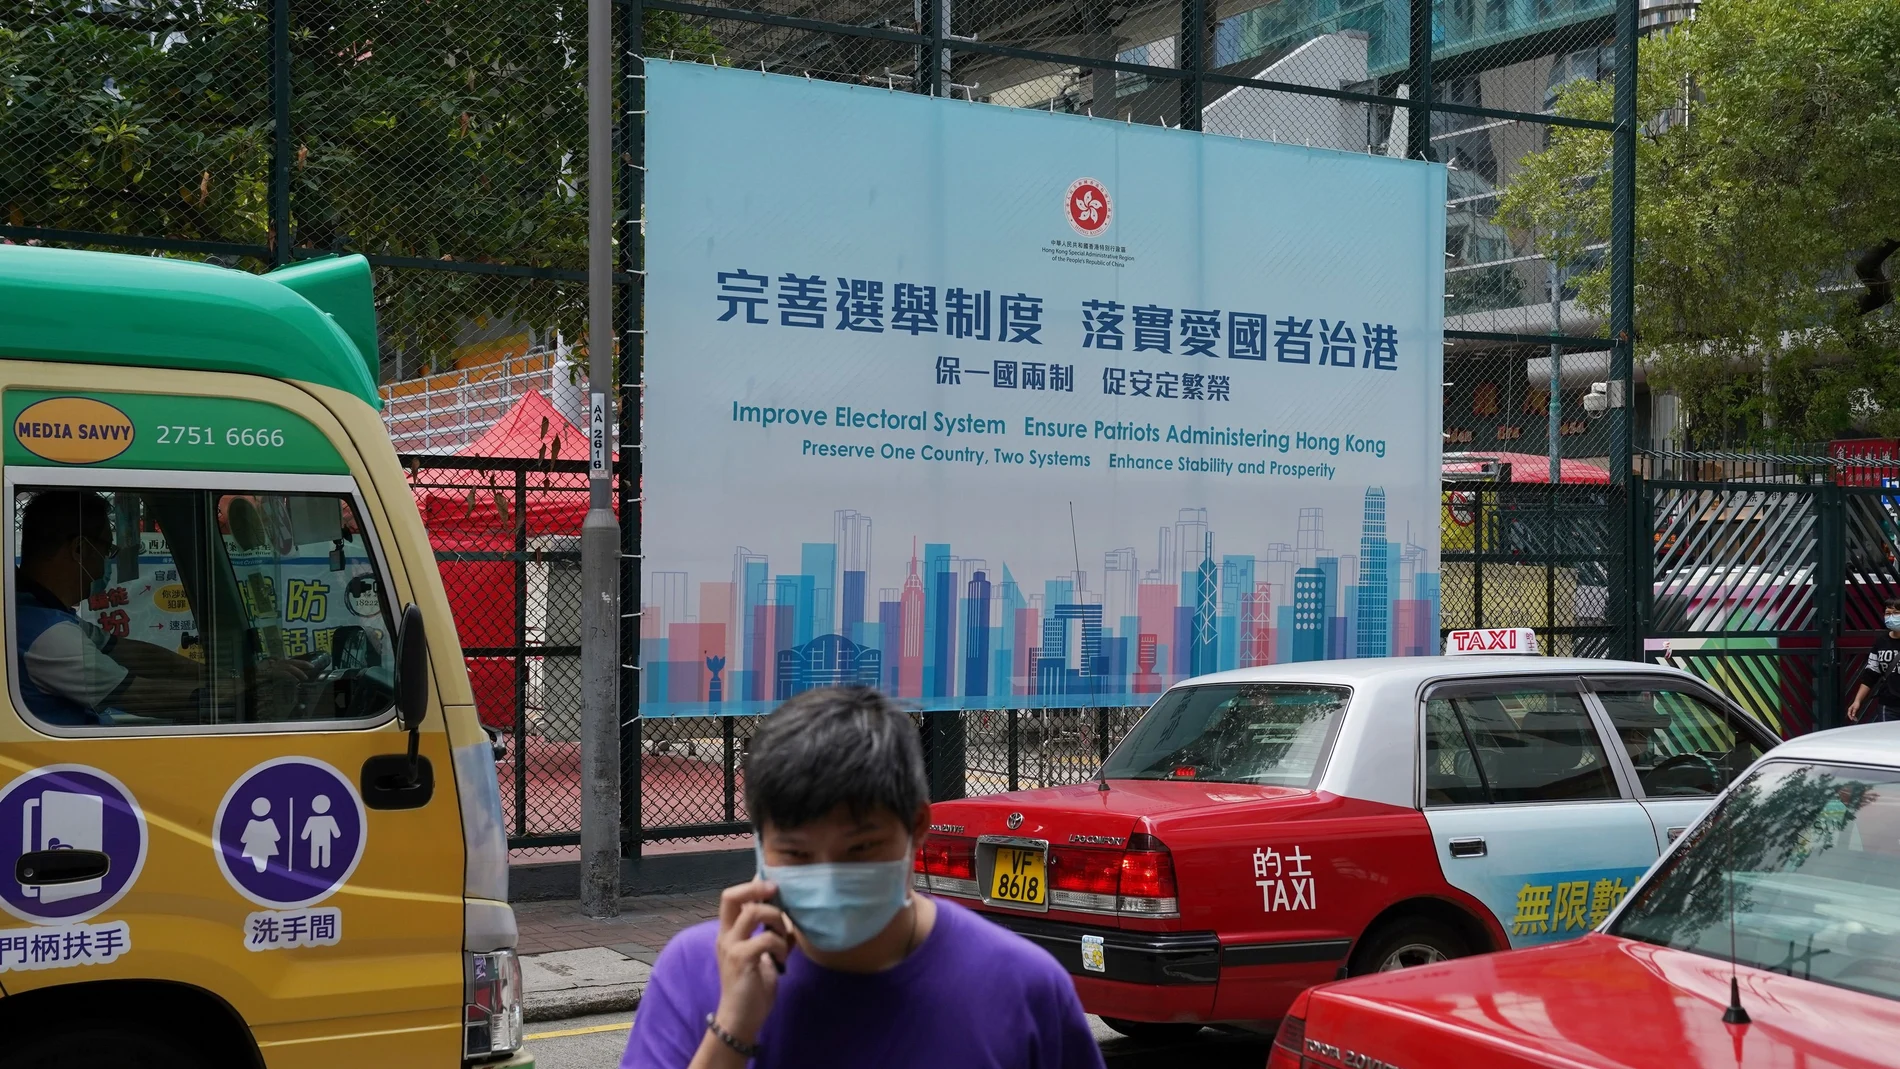 Un hombre pasa junto a un anuncio del gobierno que promueve las reformas electorales de Hong Kong